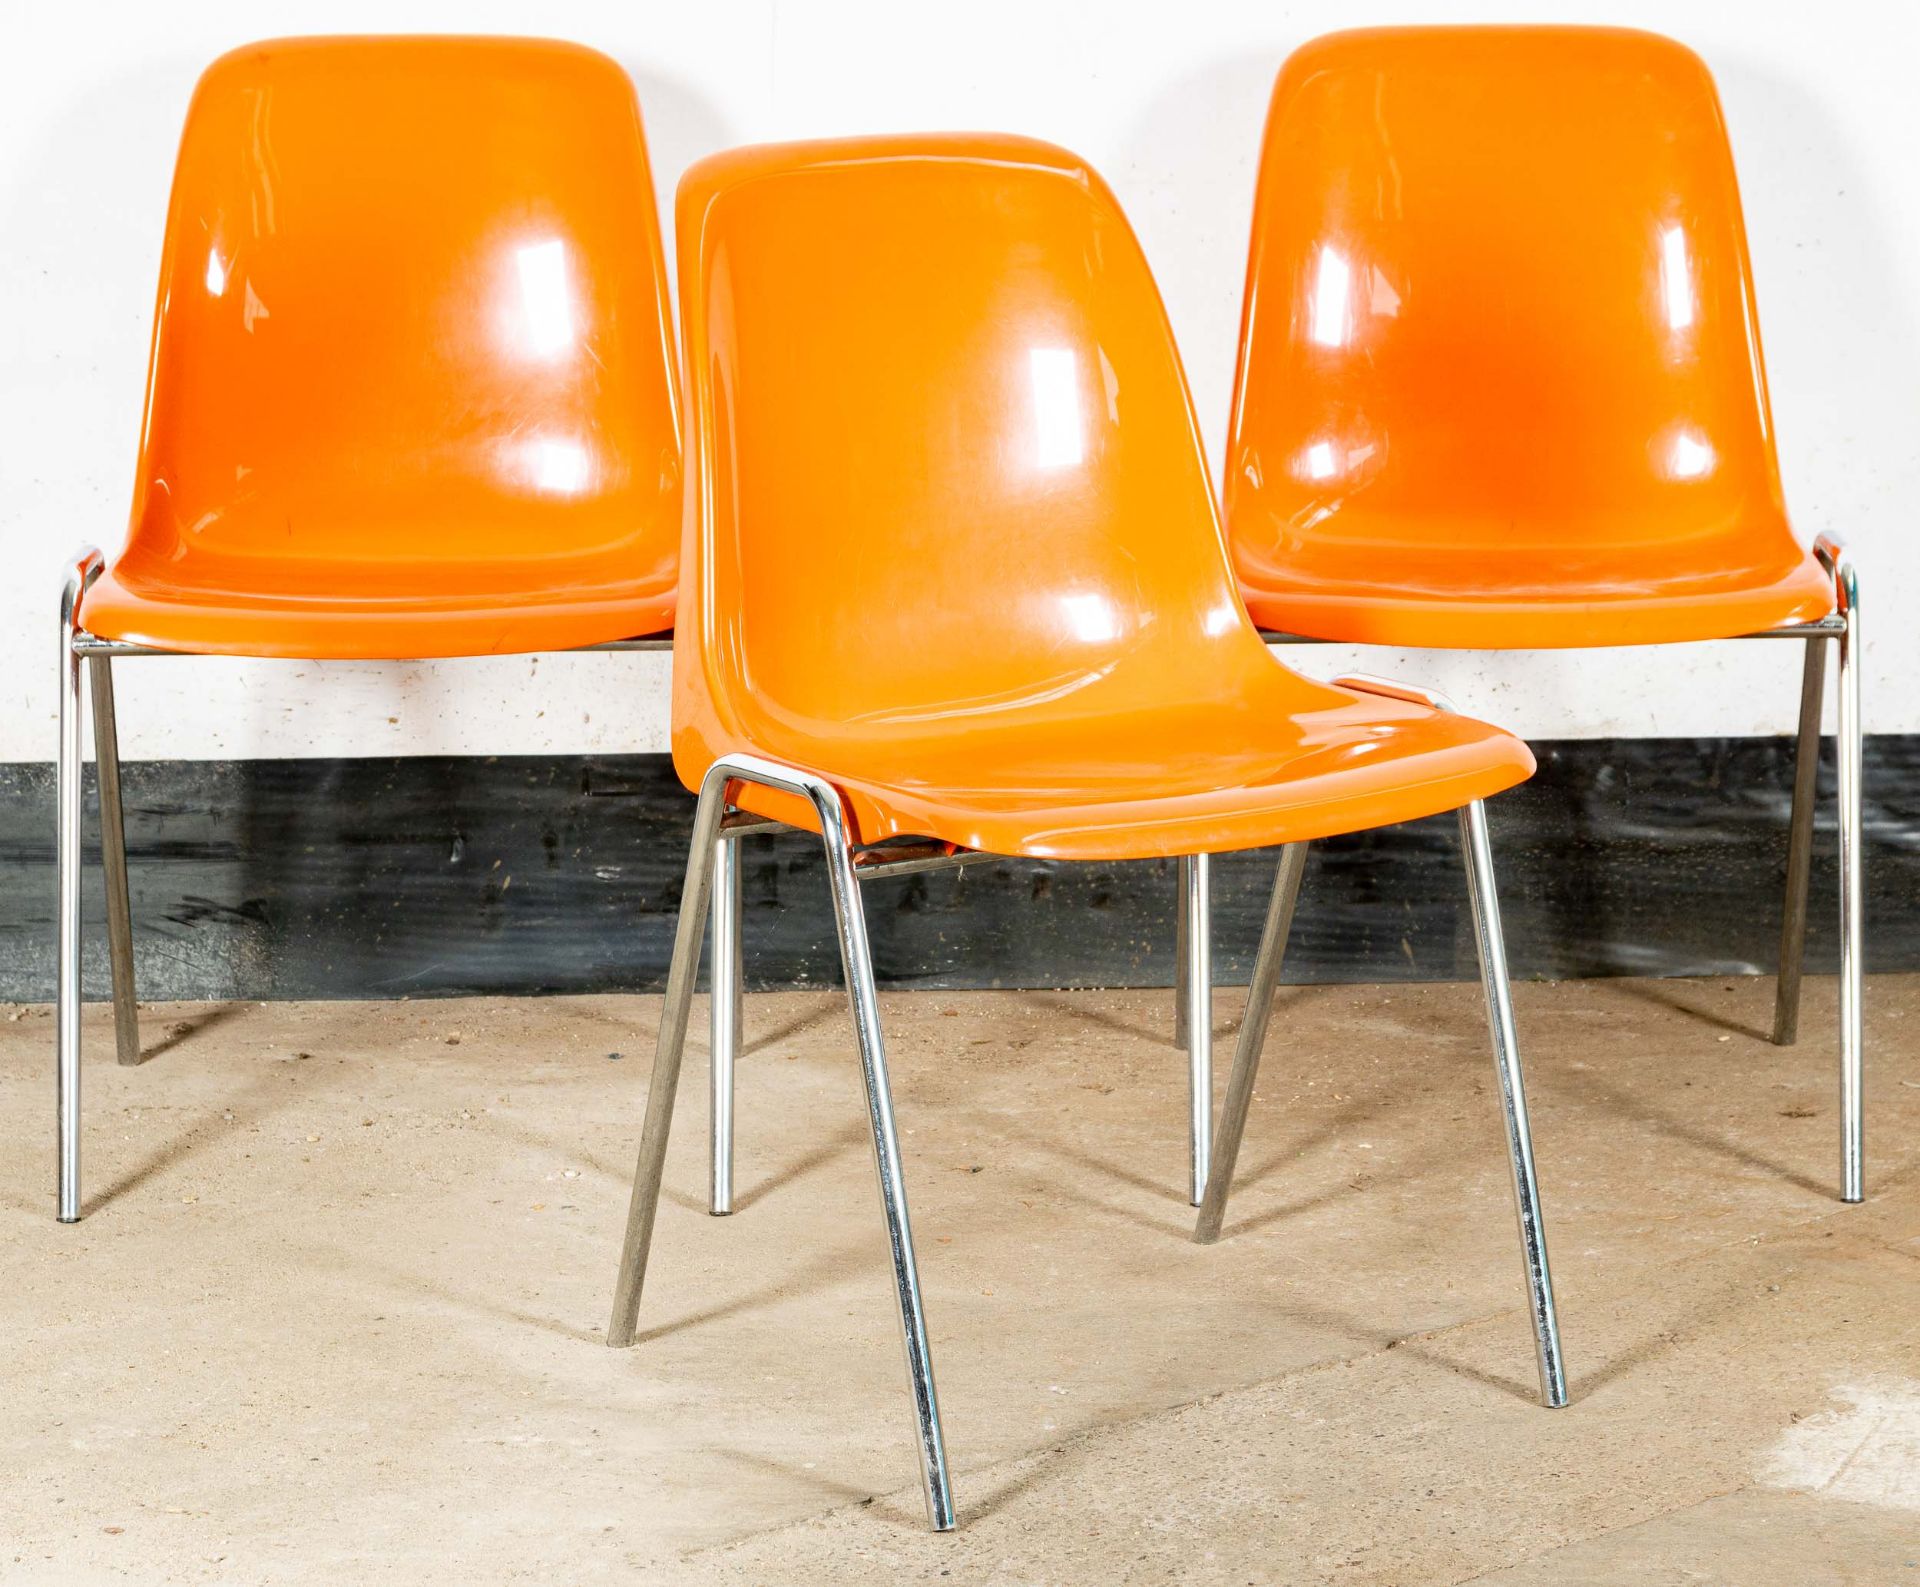 Folge von 3 Stapelstühlen der Marke "DRABERT", orange Kunststoffsitze, 1970er Jahre, verchromte Ges